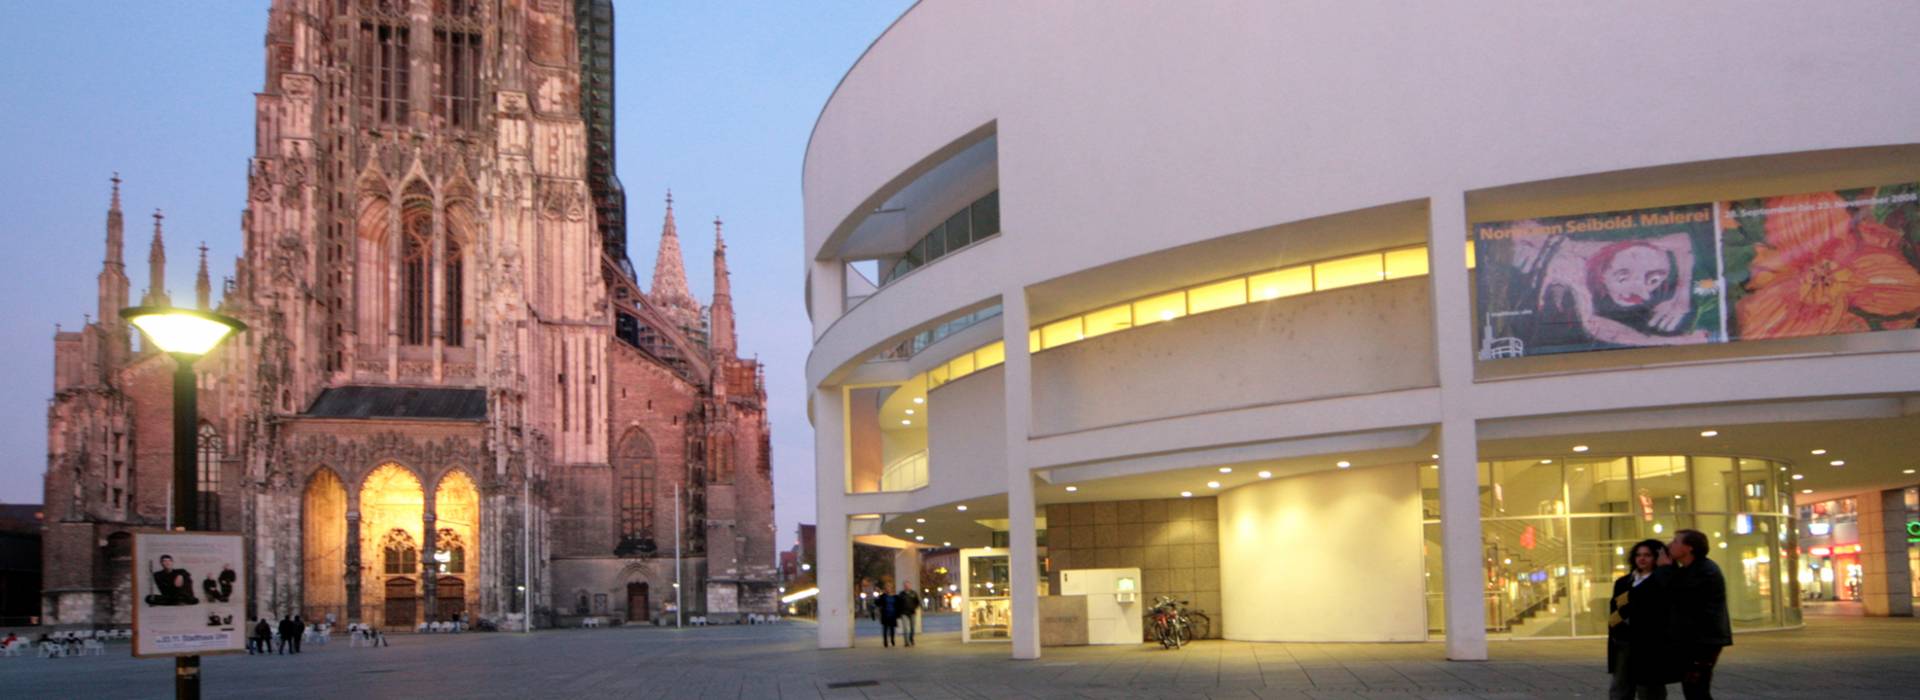 Das Ulmer Münster und  das Stadthaus während der abendlichen Dämmerung. Foto: Ulm/Neu-Ulm Touristik GmbH - Stadtarchiv Ulm 